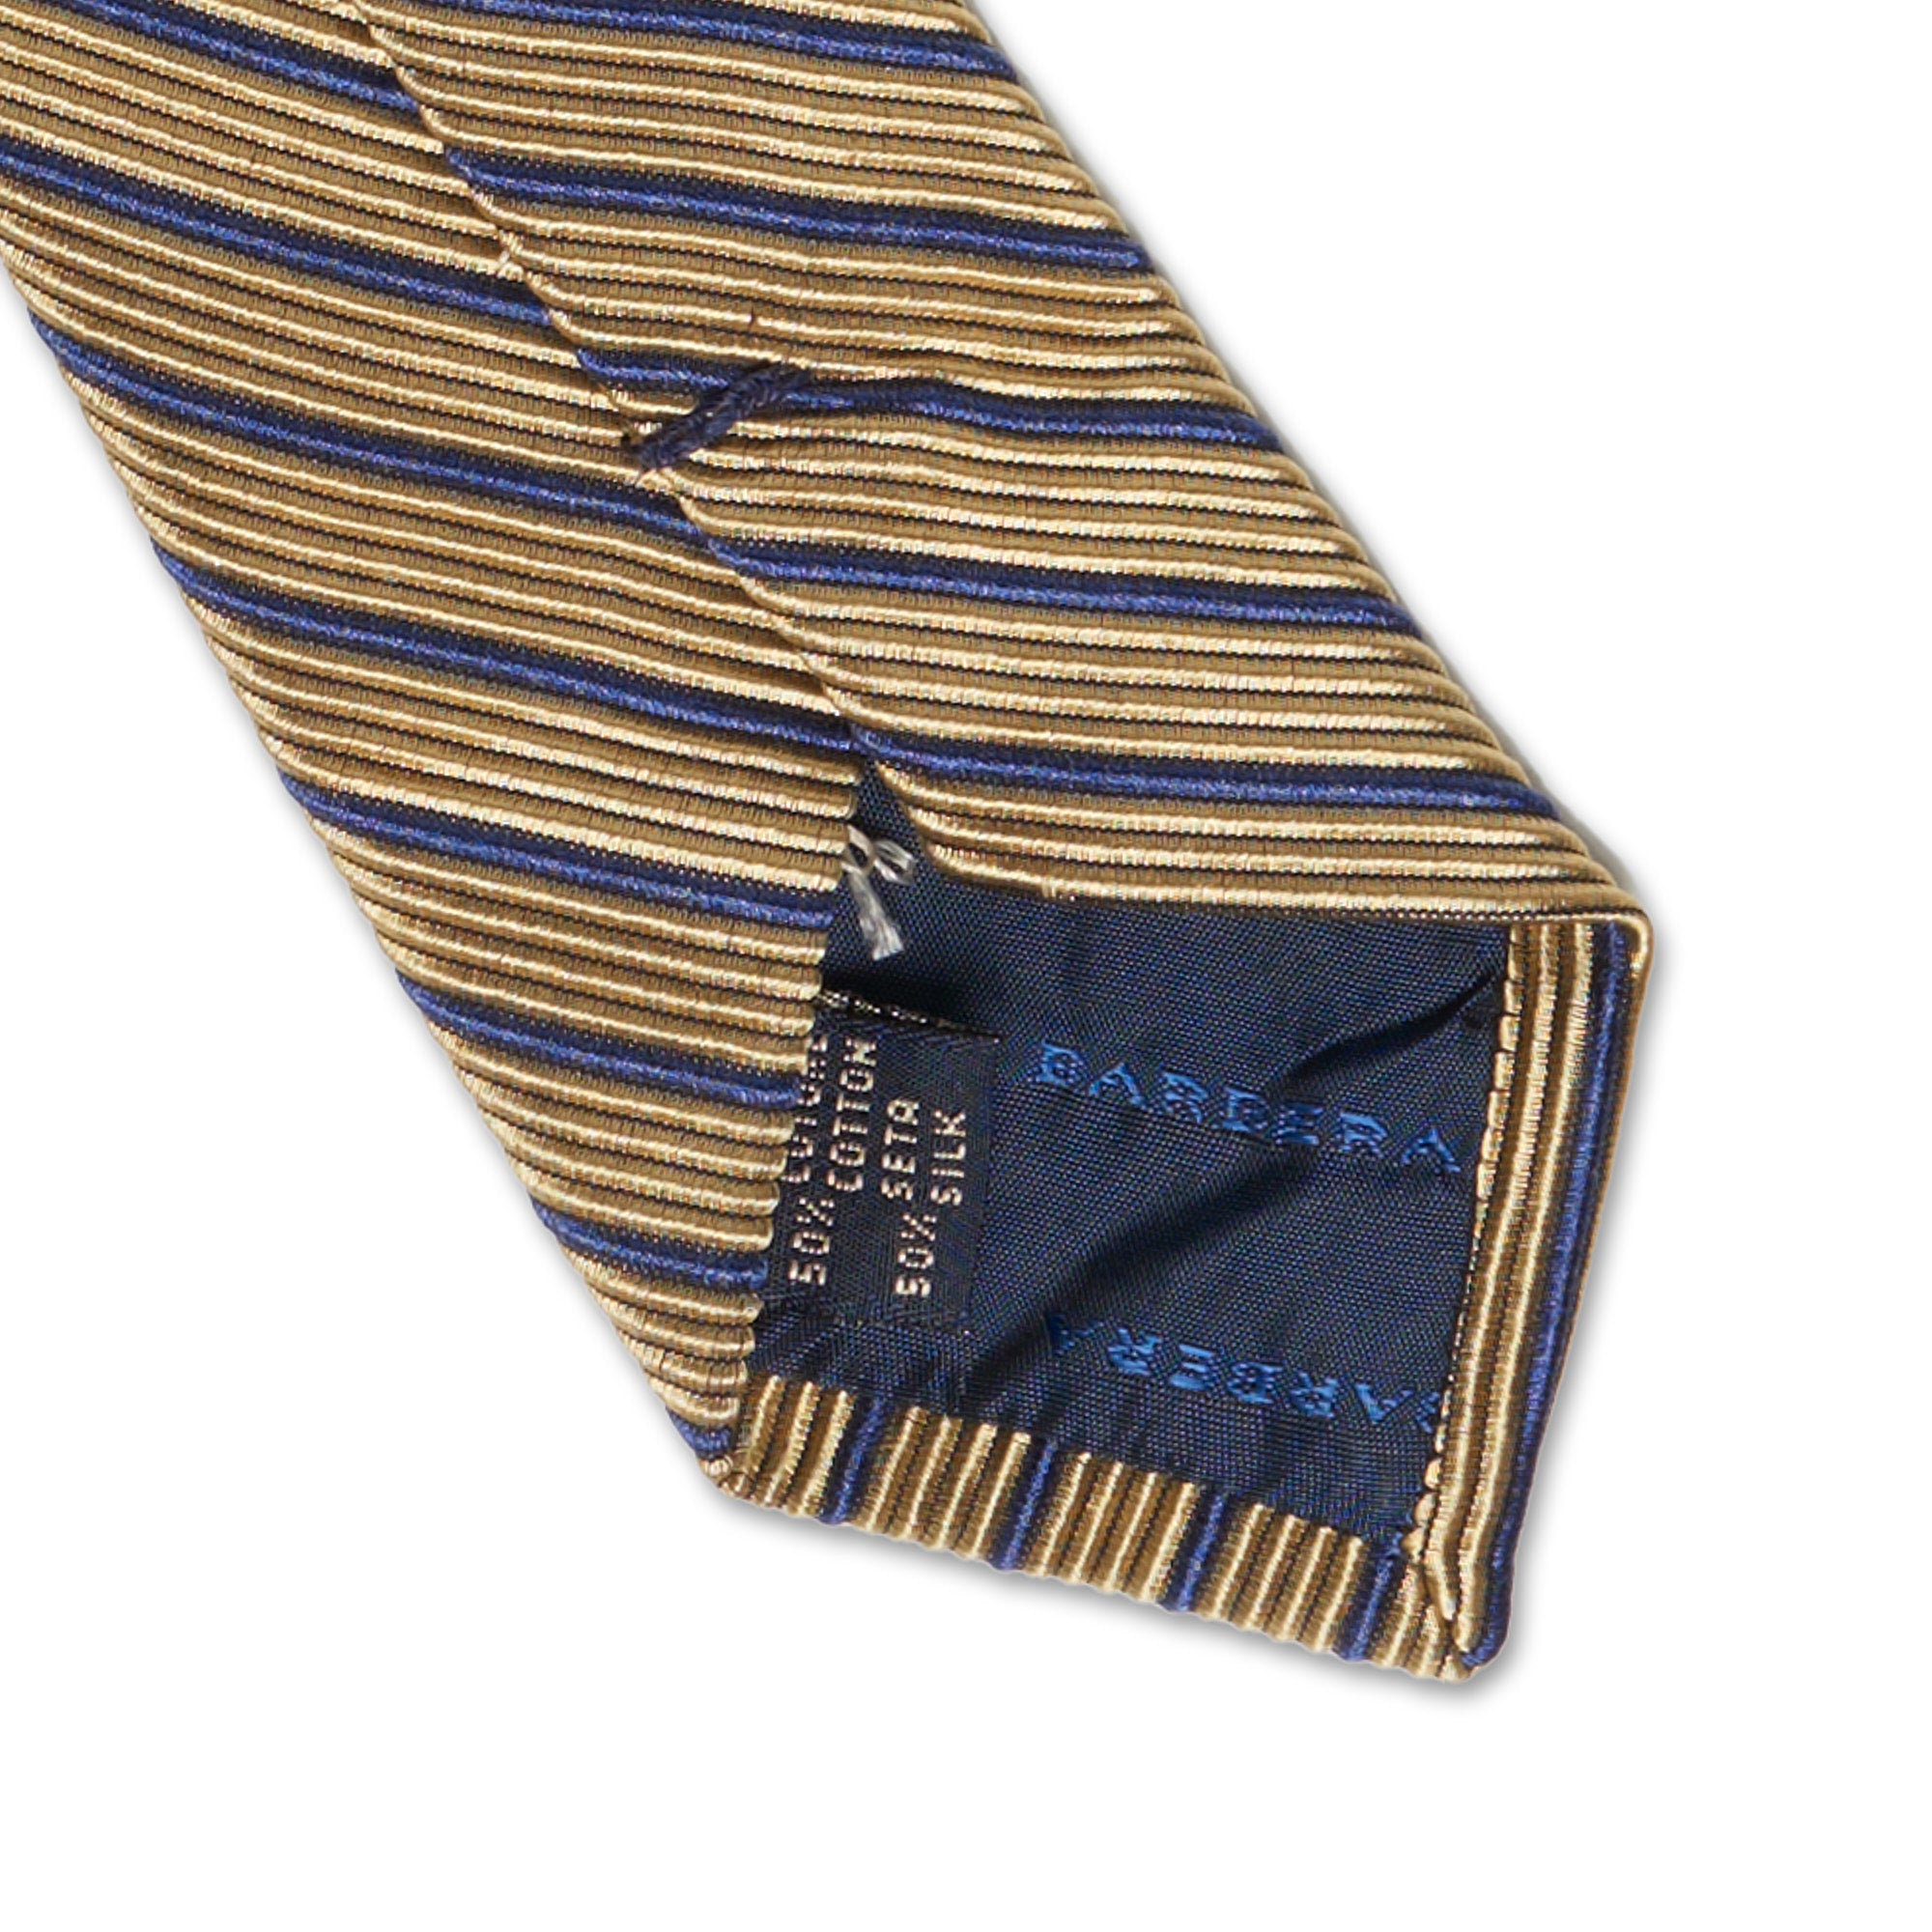 LUCIANO BARBERA Handmade Gold Striped Design Silk-Cotton Tie LUCIANO BARBERA